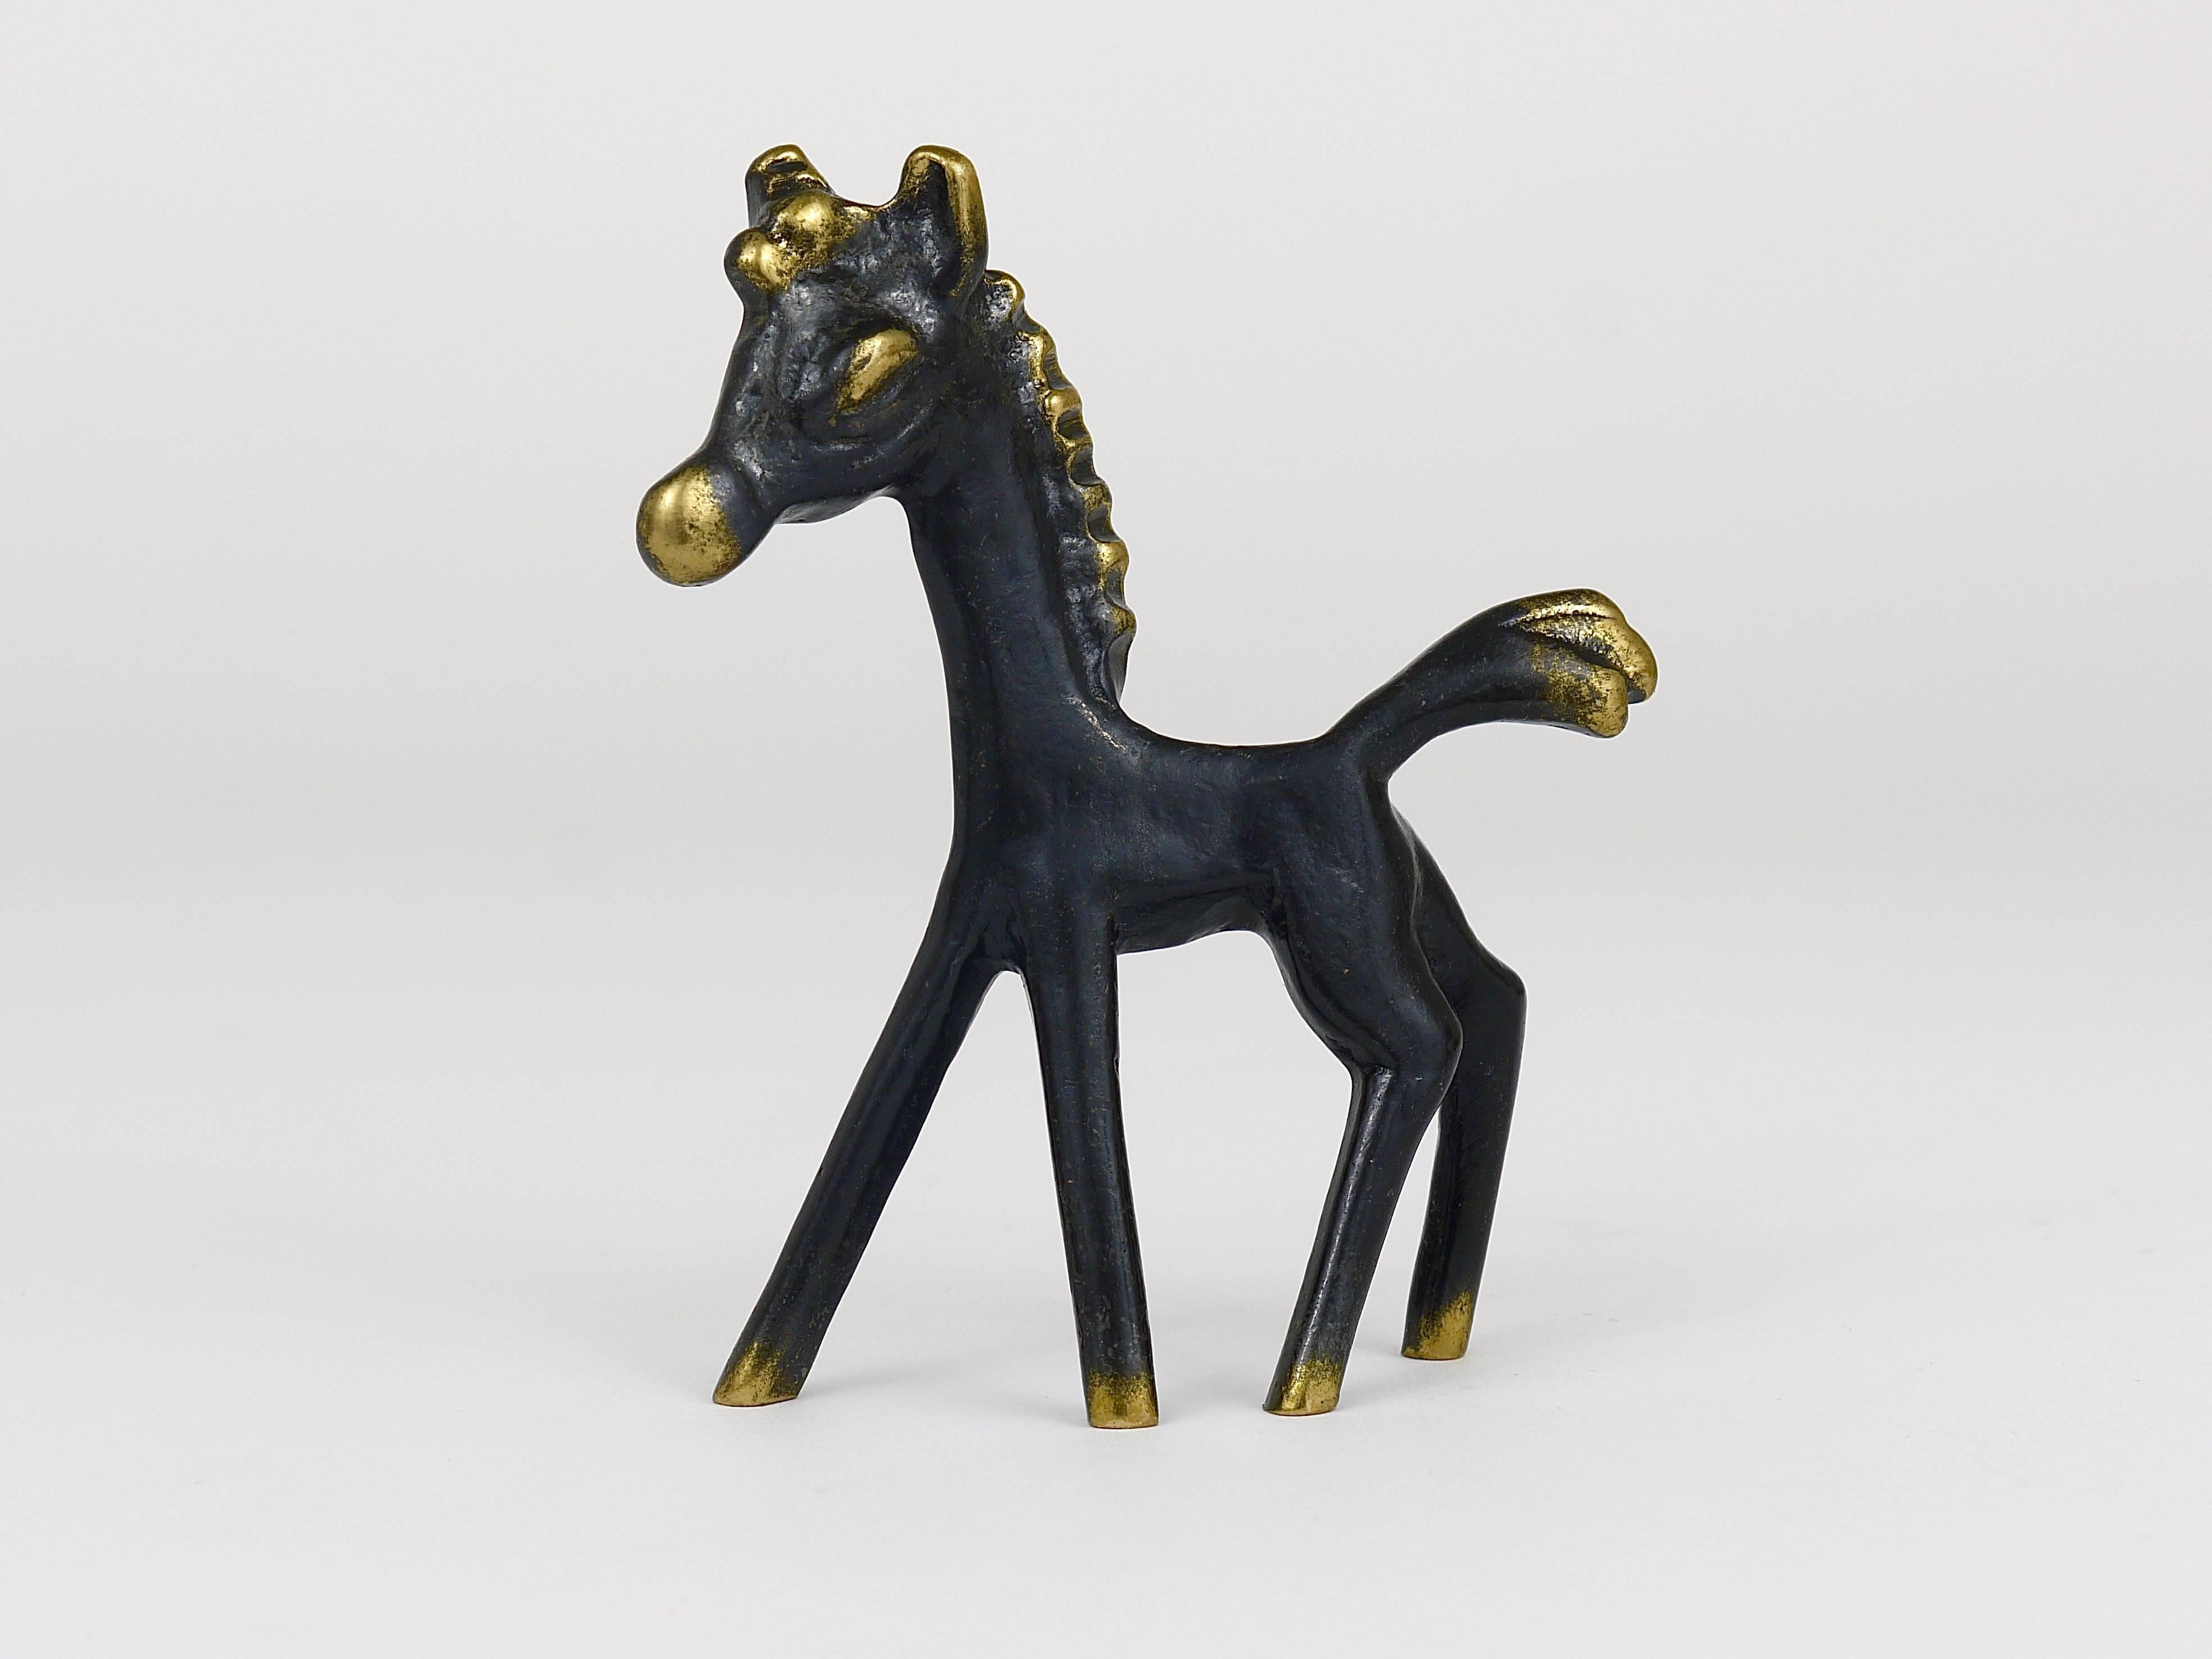 20th Century Walter Bosse Midcentury Horse Brass Figurine, Hertha Baller, Austria, 1950s